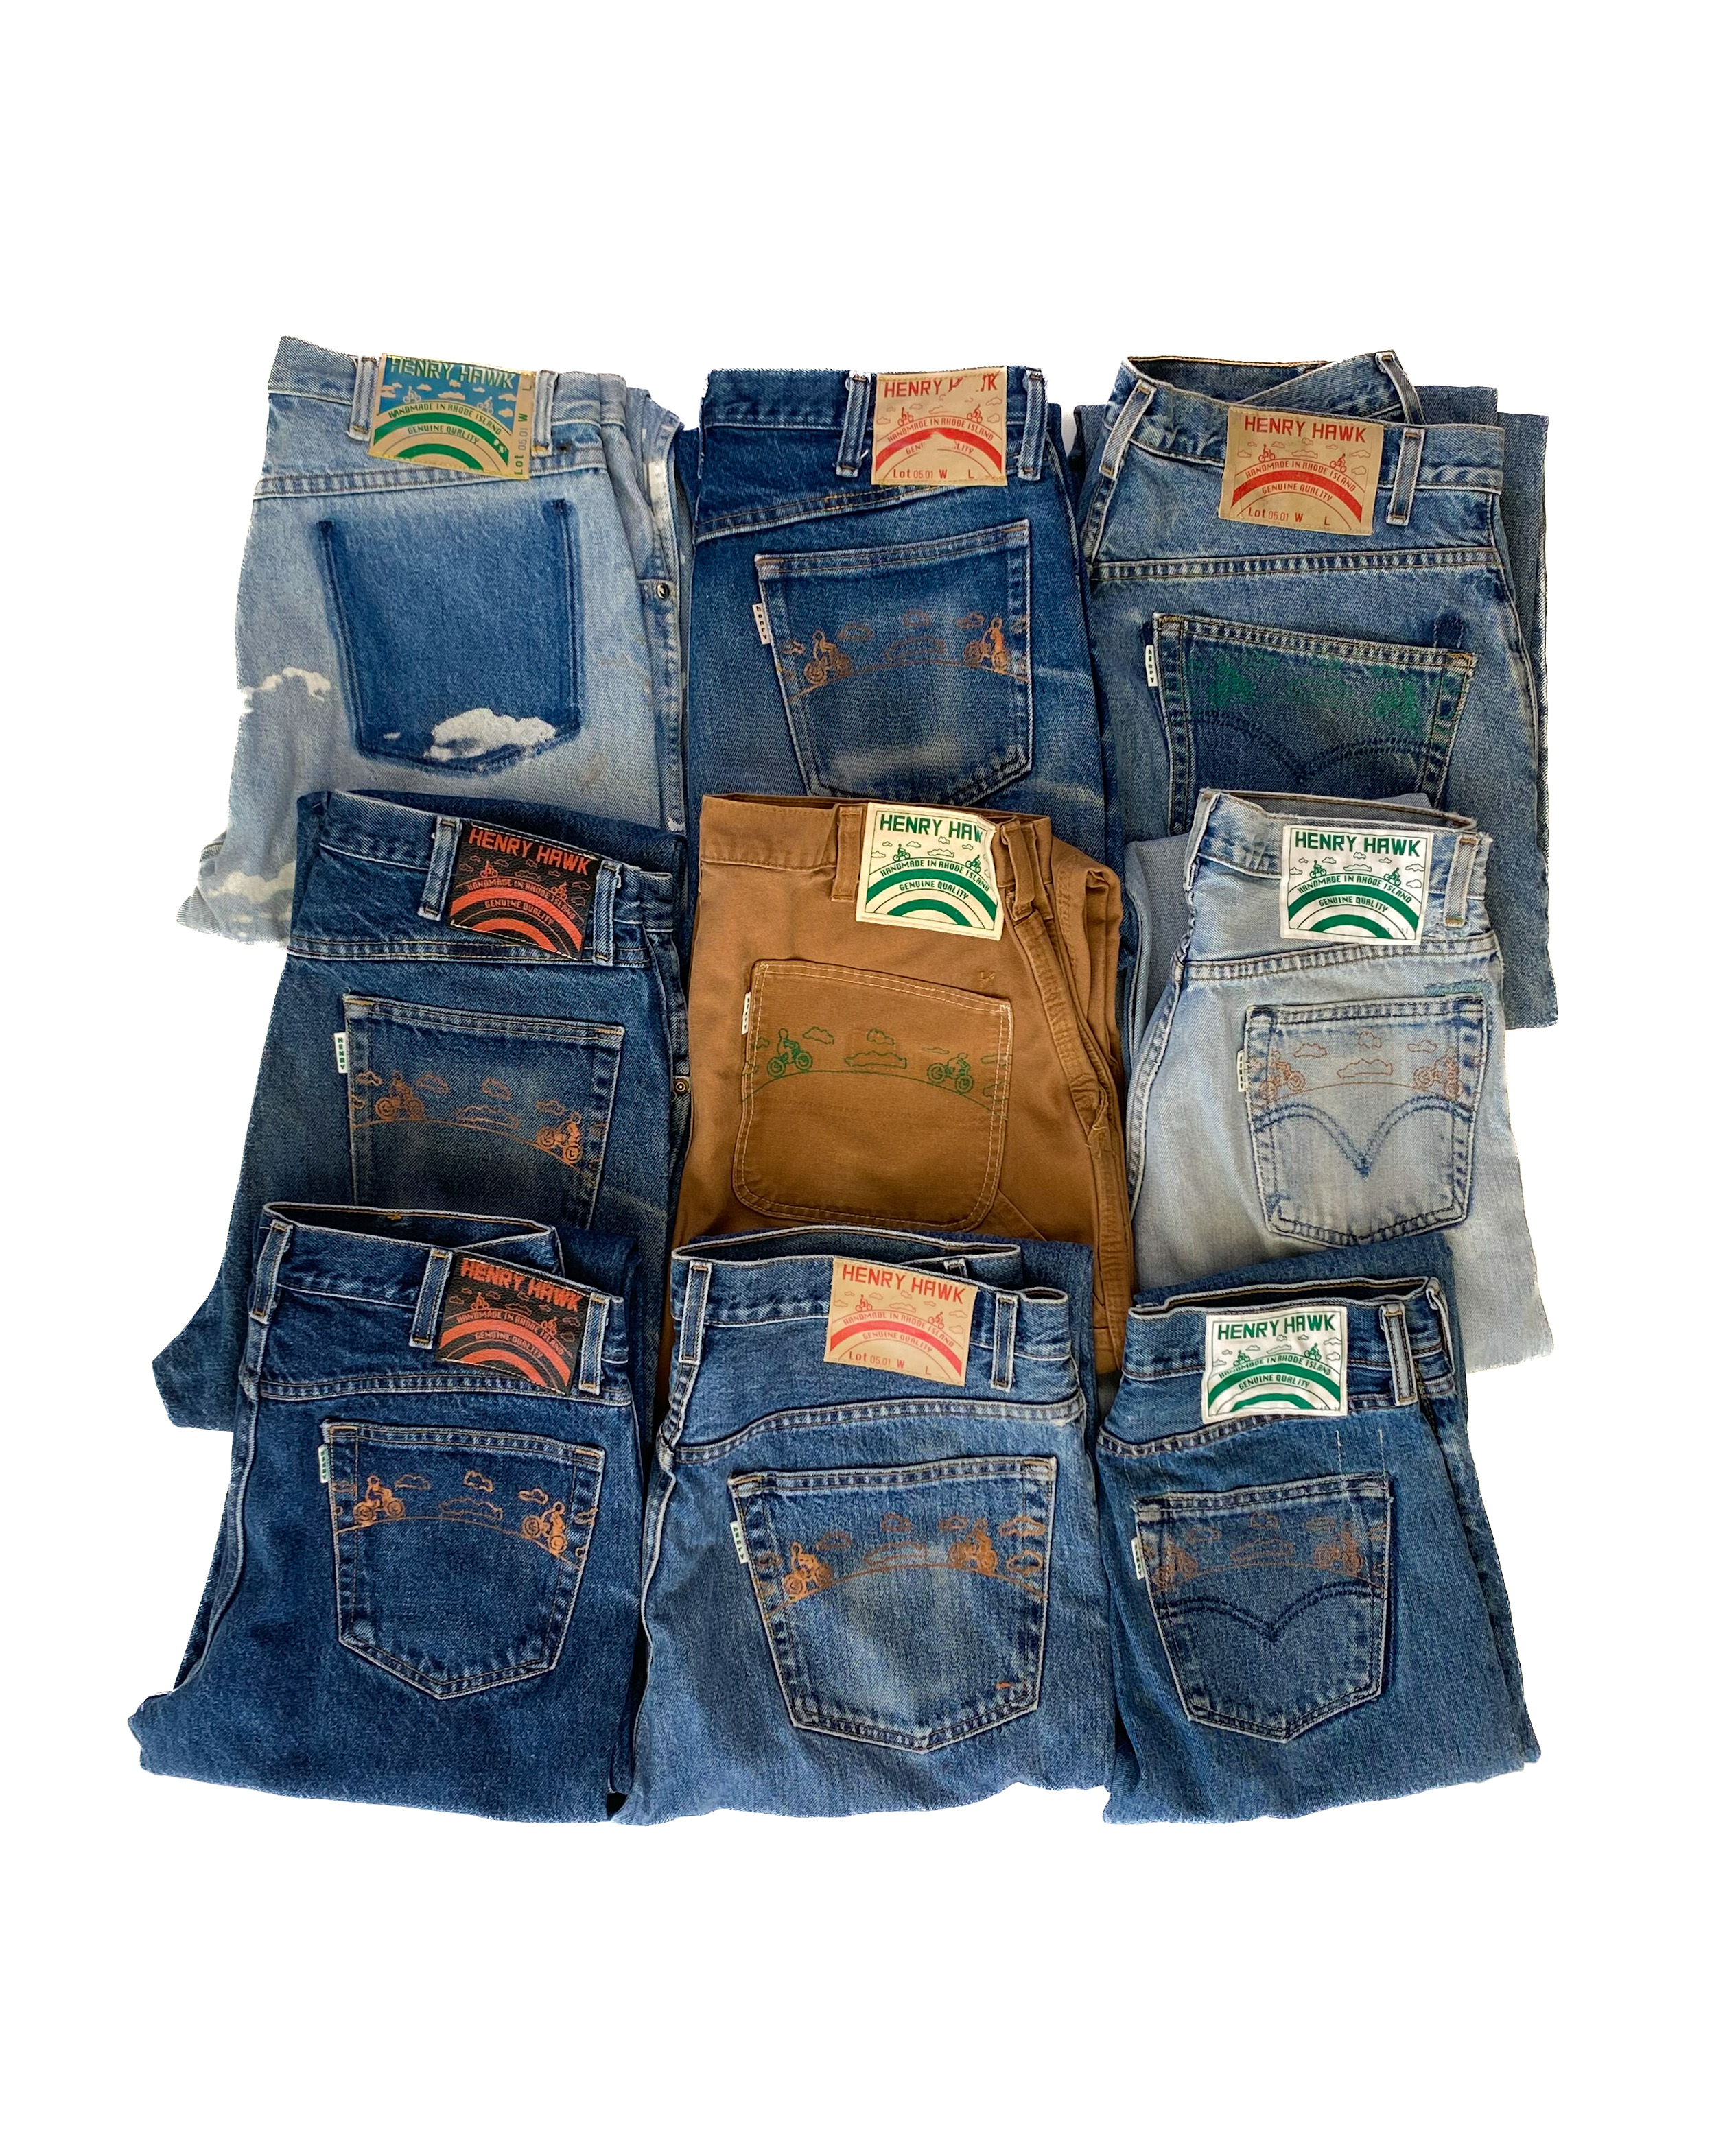 Henry Hawk jeans Refurbished - SHOP